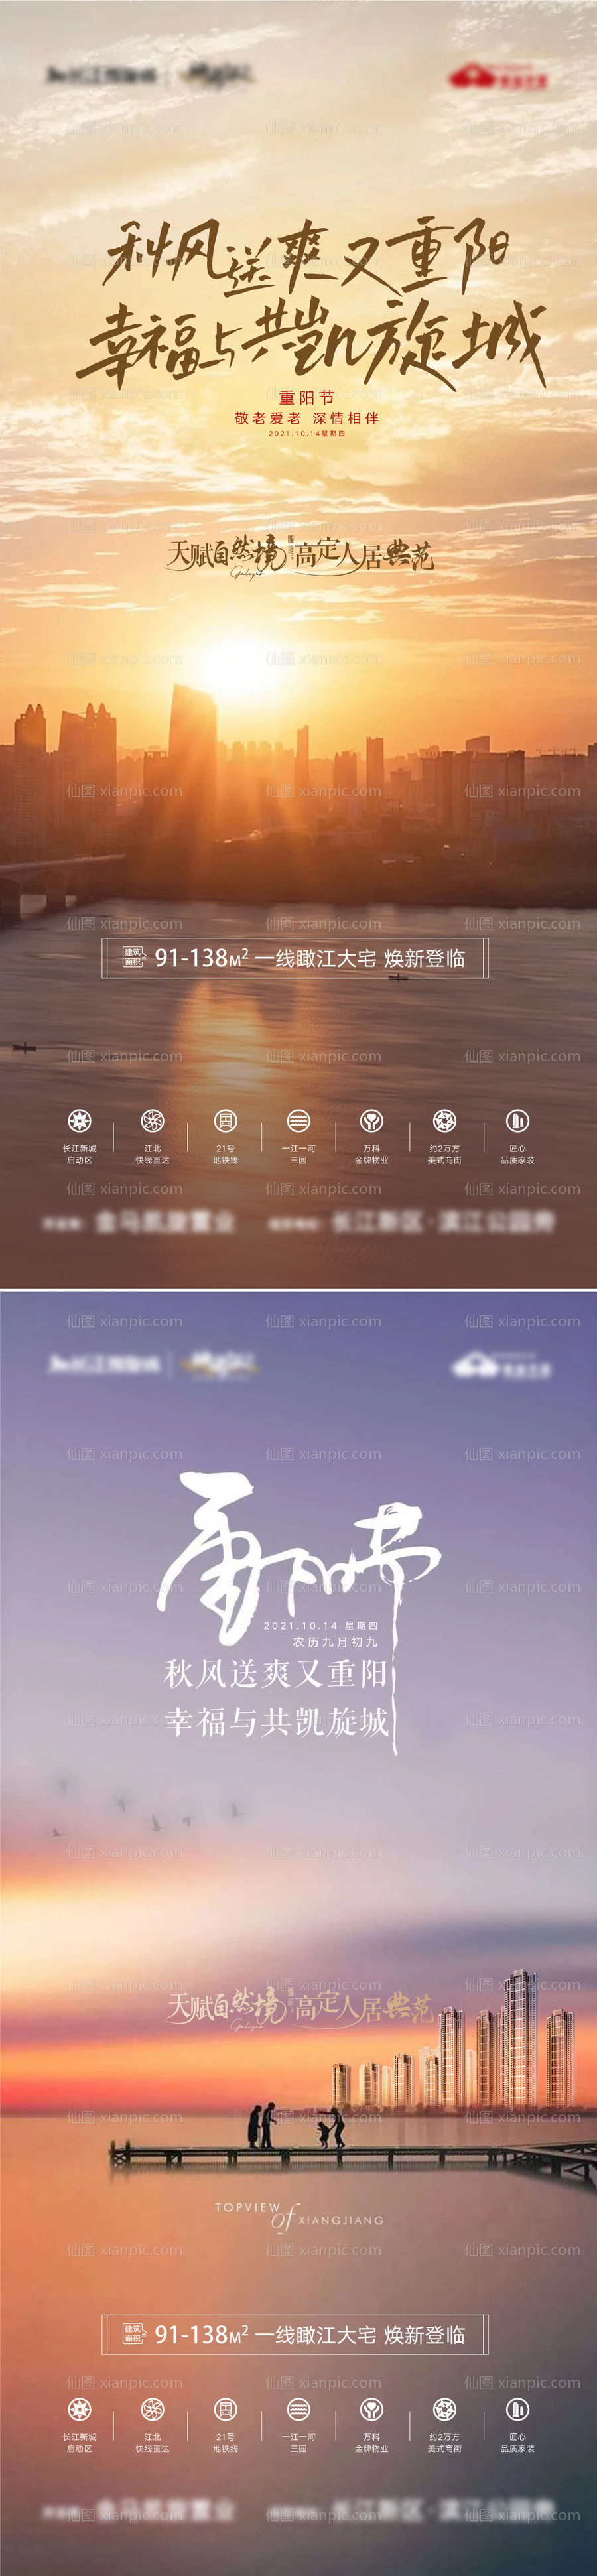 素材乐-地产滨江湖景江景重阳节海报